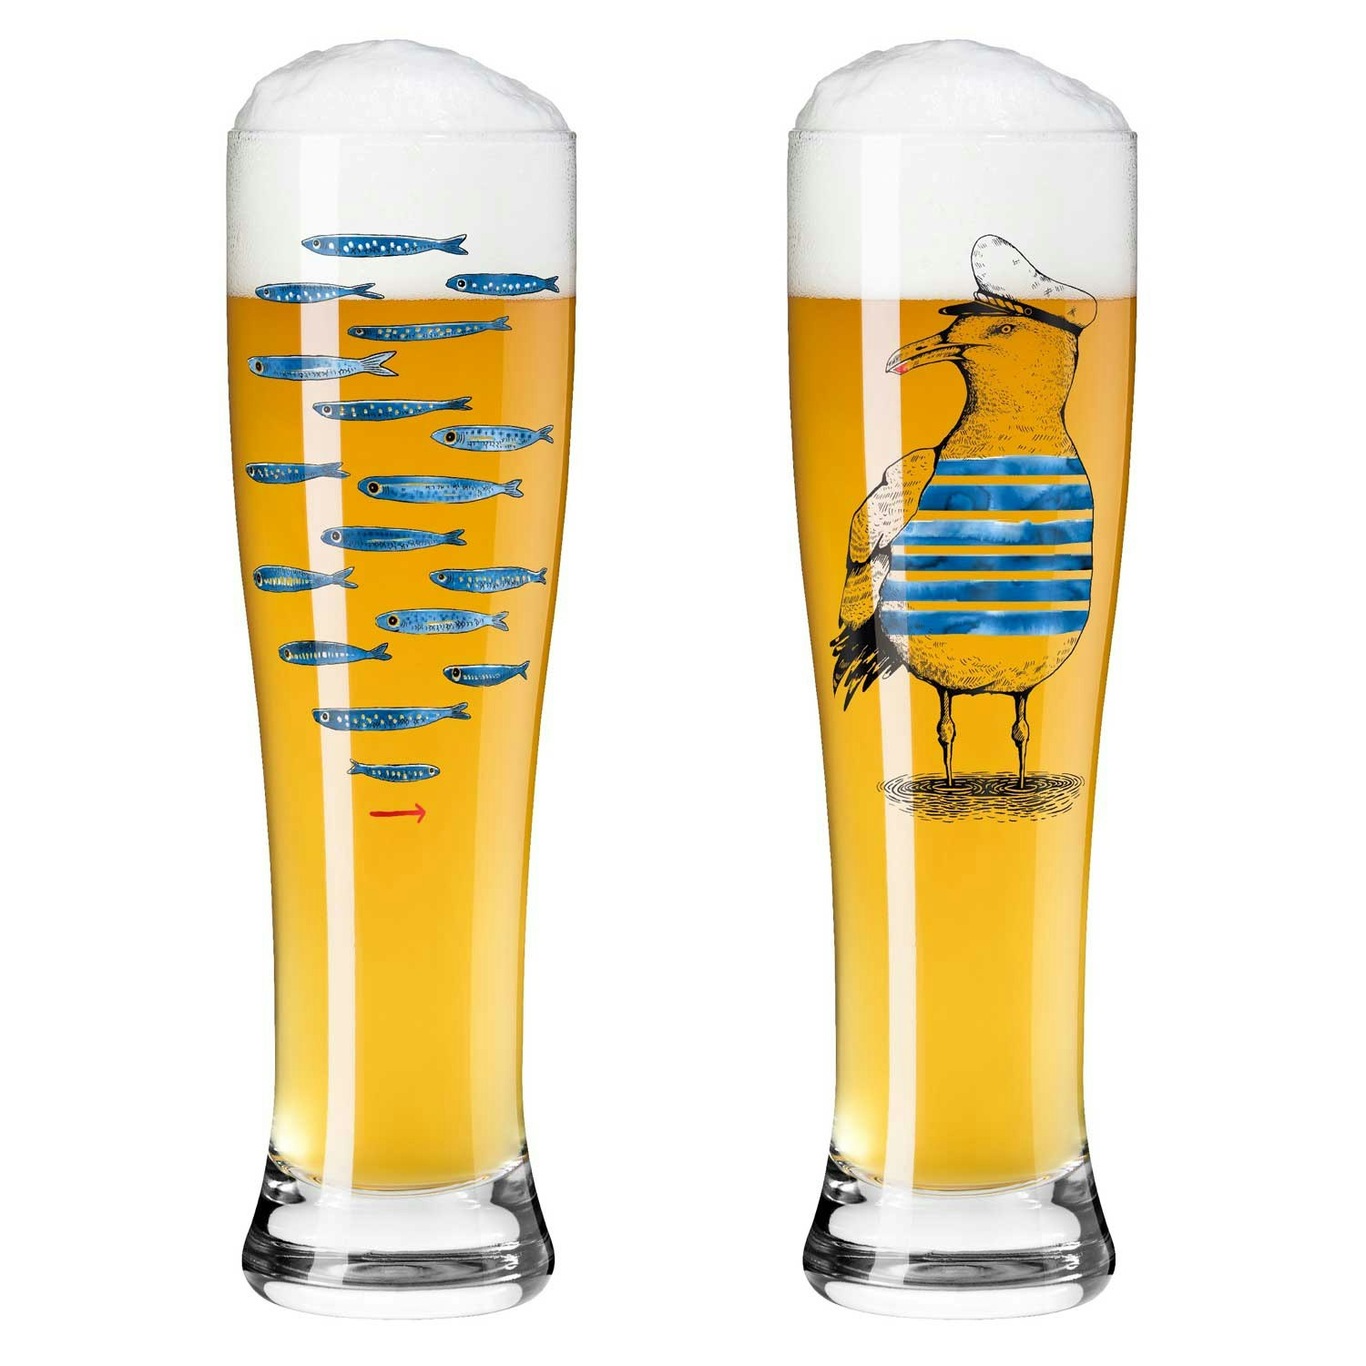 Brauchzeit Beer Glass 2-pack, #13 & 14 - Ritzenhoff @ RoyalDesign